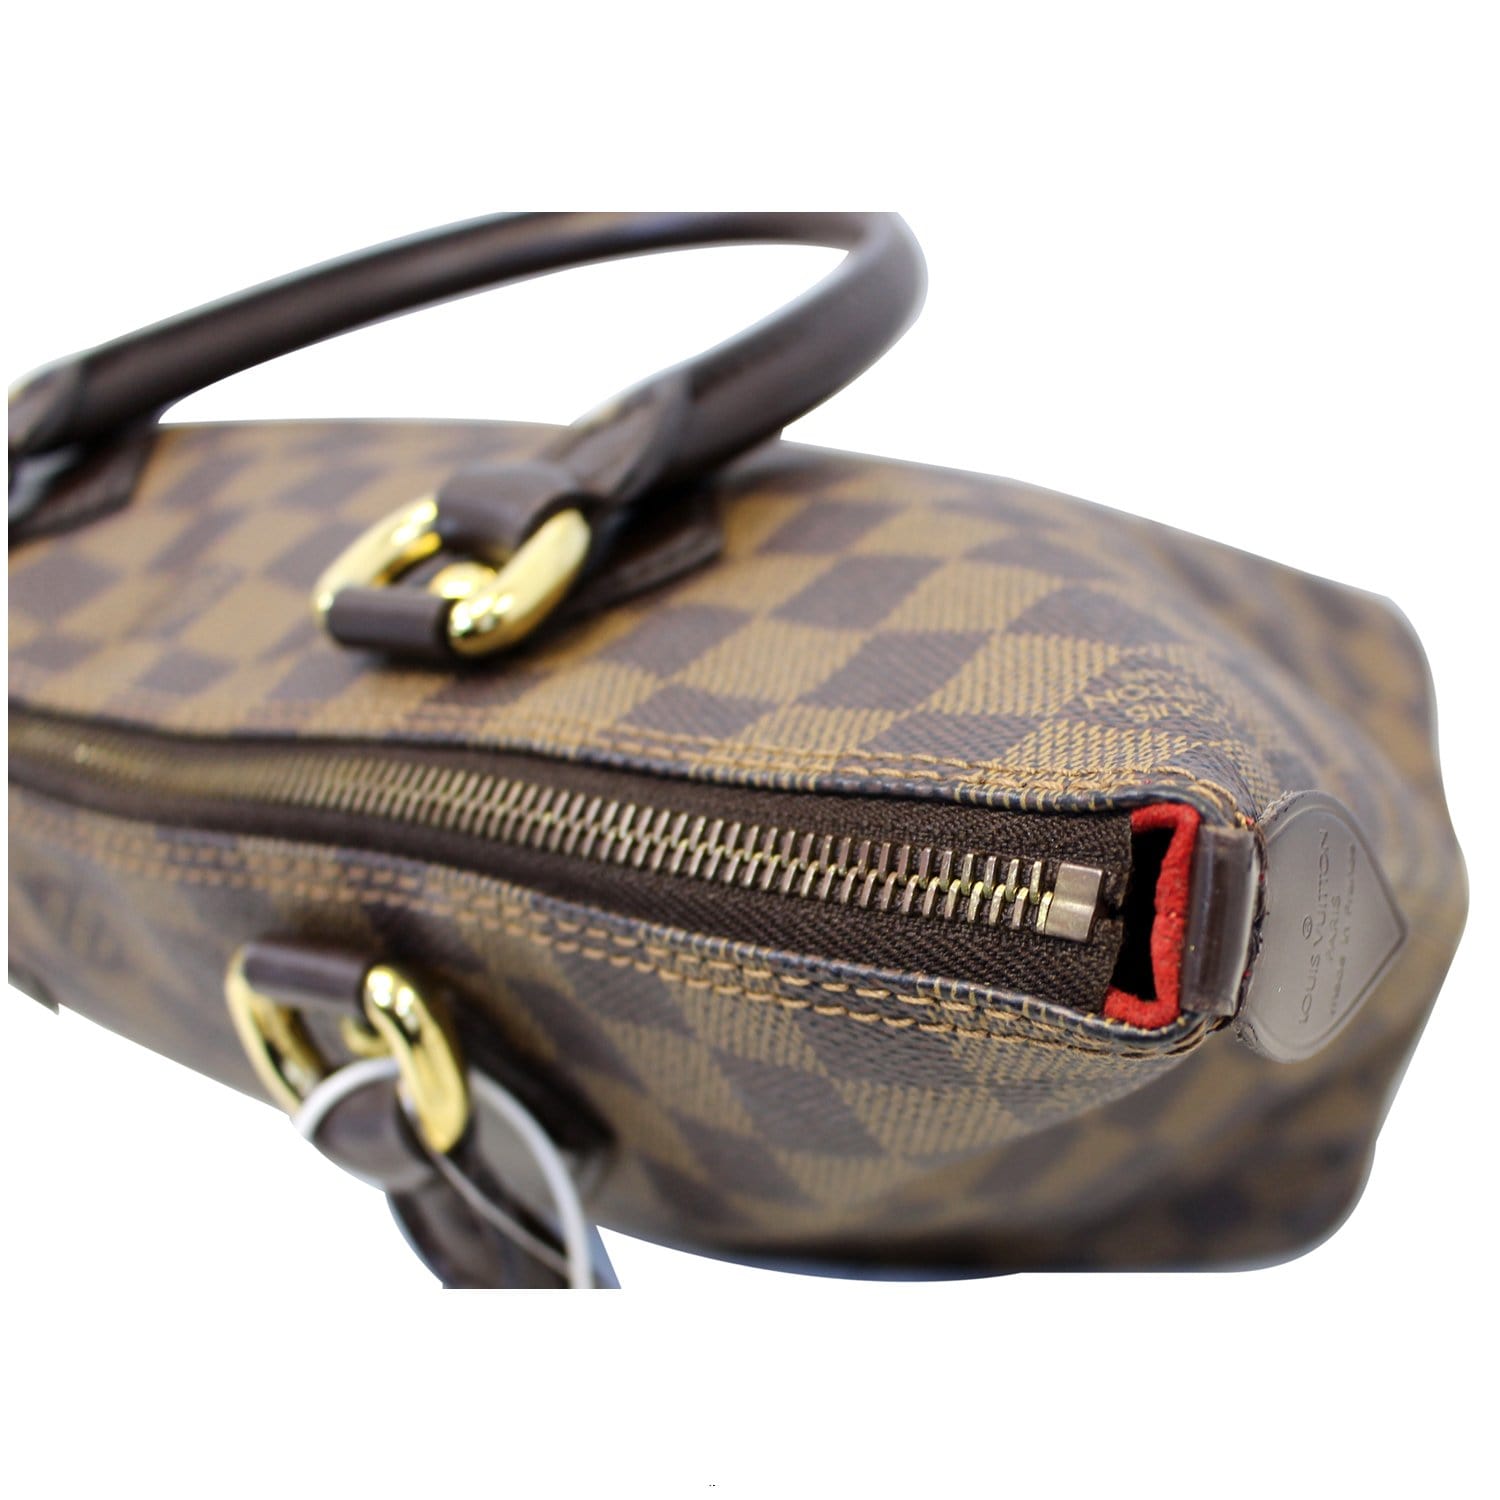 Authentic LOUIS VUITTON Saleya PM Damier Azur Tote Hand Shoulder Bag #51344